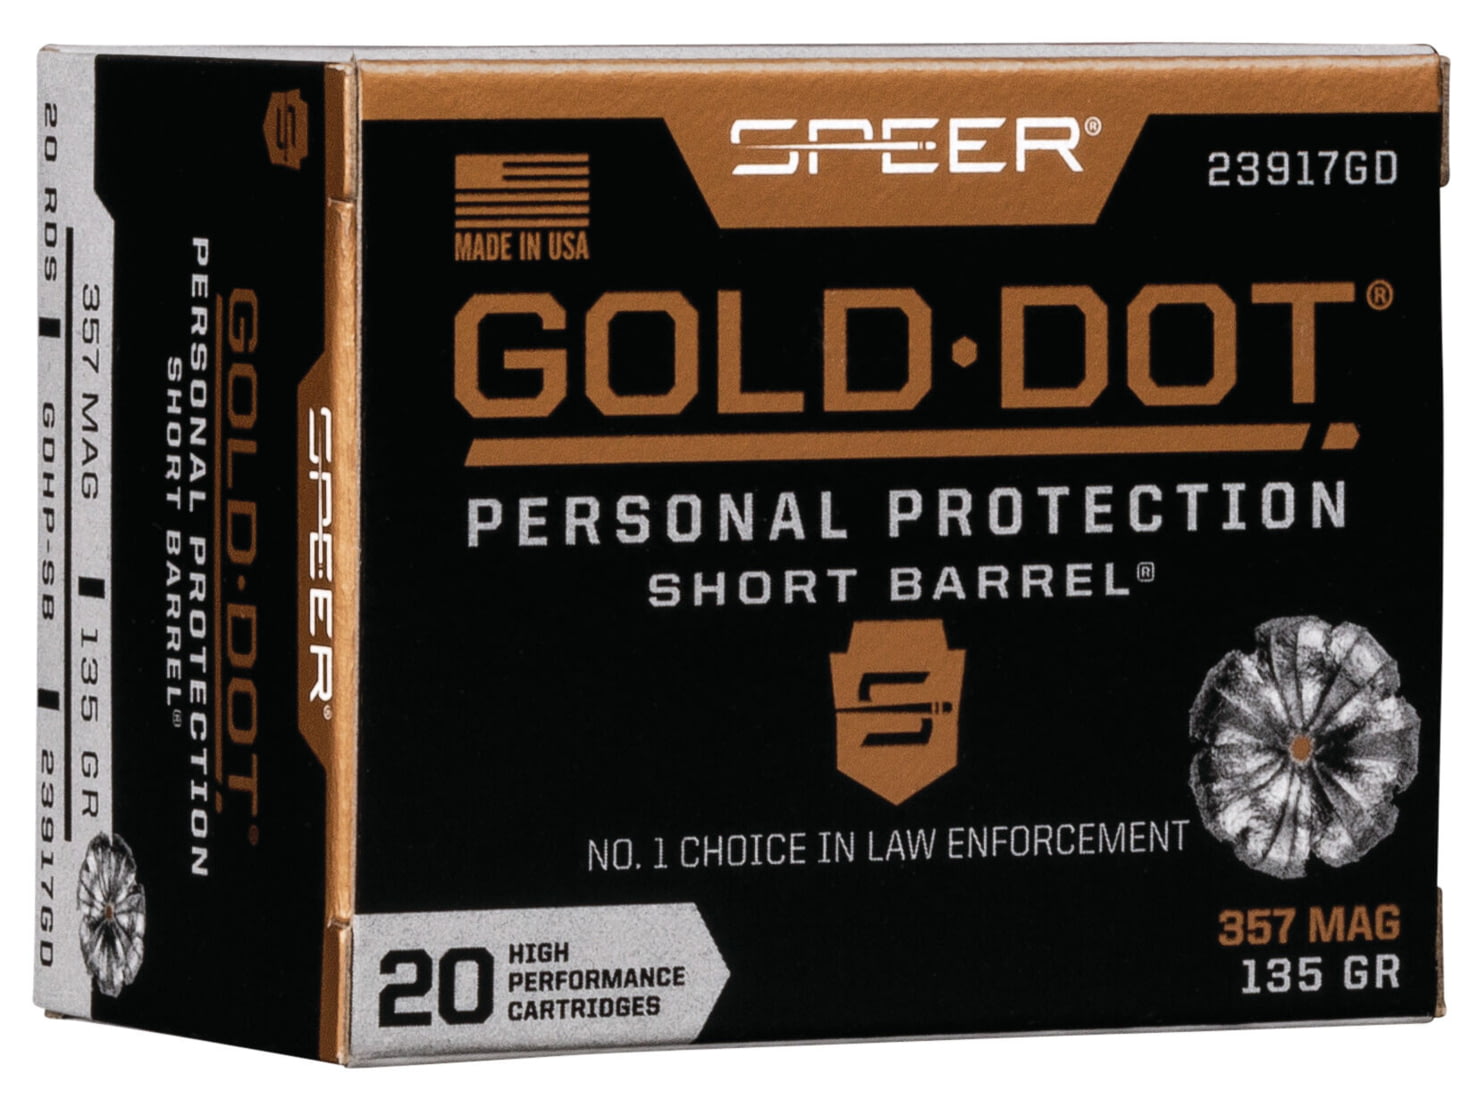 Speer Gold Dot .357 Magnum 135 grain Gold Dot Hollow Point Short Barrel Centerfire Pistol Ammunition